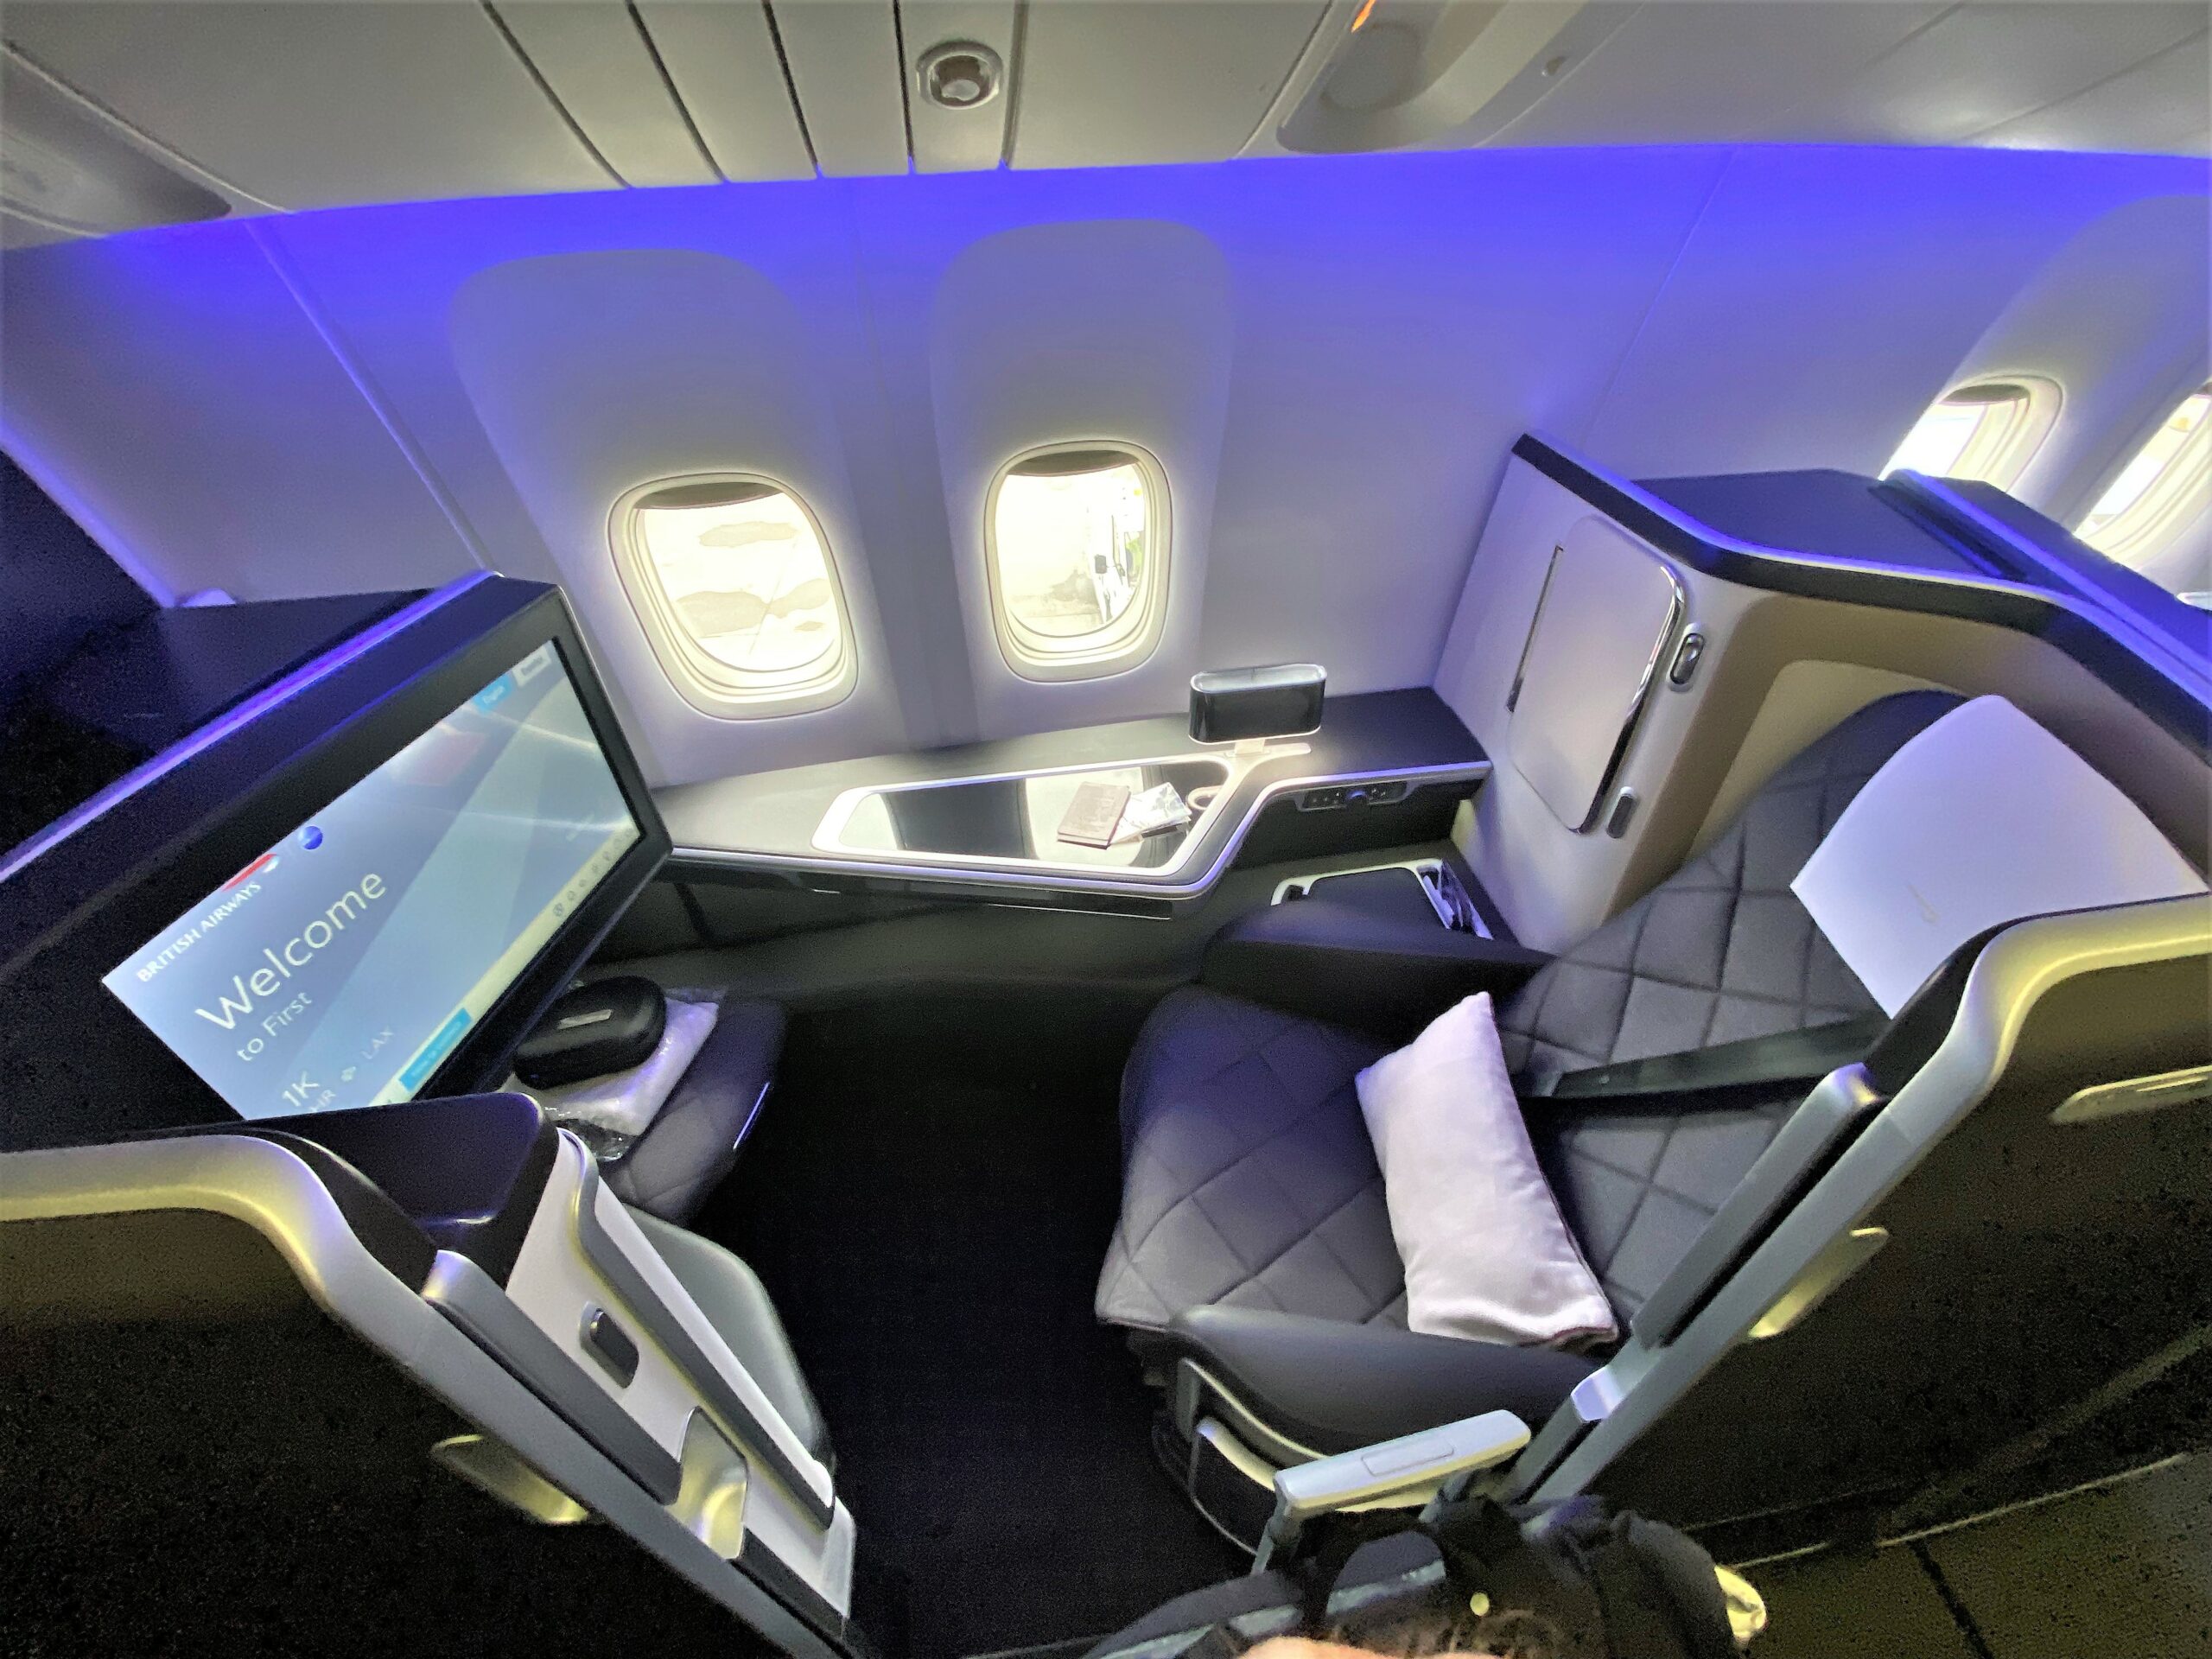 British Airways First class versus Qatar Business class QSuite ...